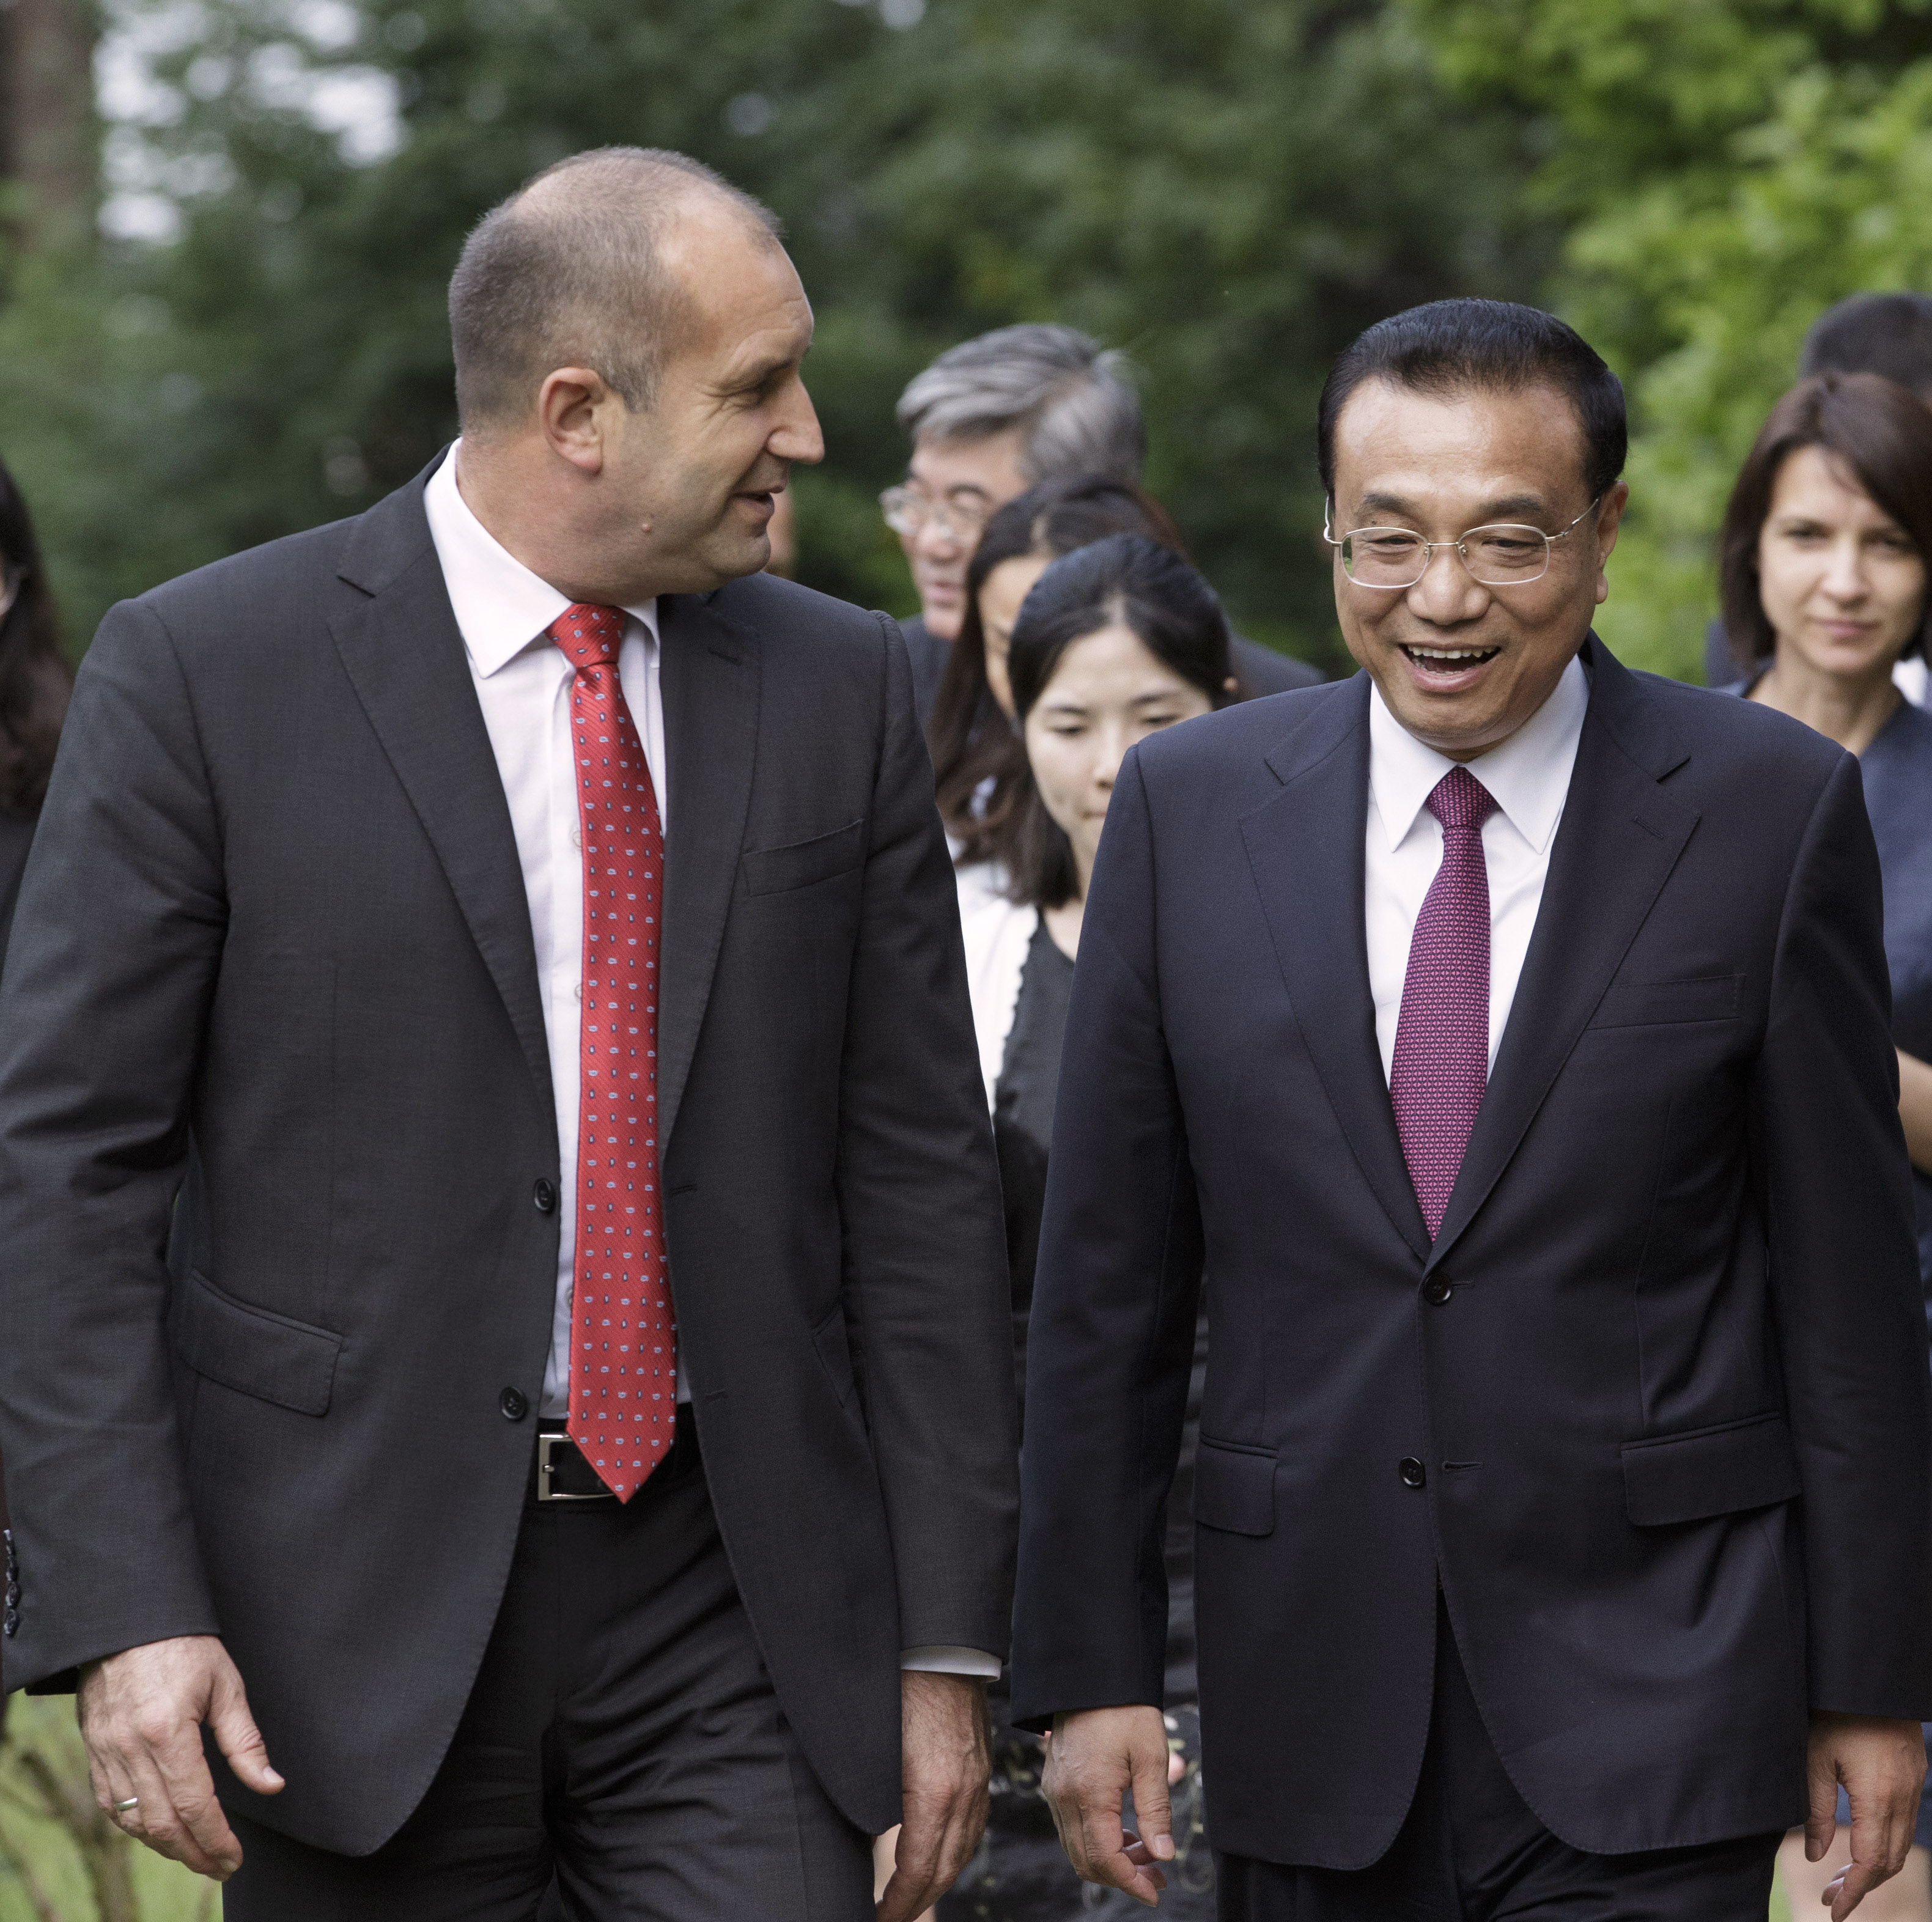 Президентът Румен Радев и неговата съпруга Десислава Радева посрещнаха министър-председателя на Китай Ли Къцян и съпругата му Чън Хон във известната държавна вила „Калина” в софийския квартал „Бояна”.